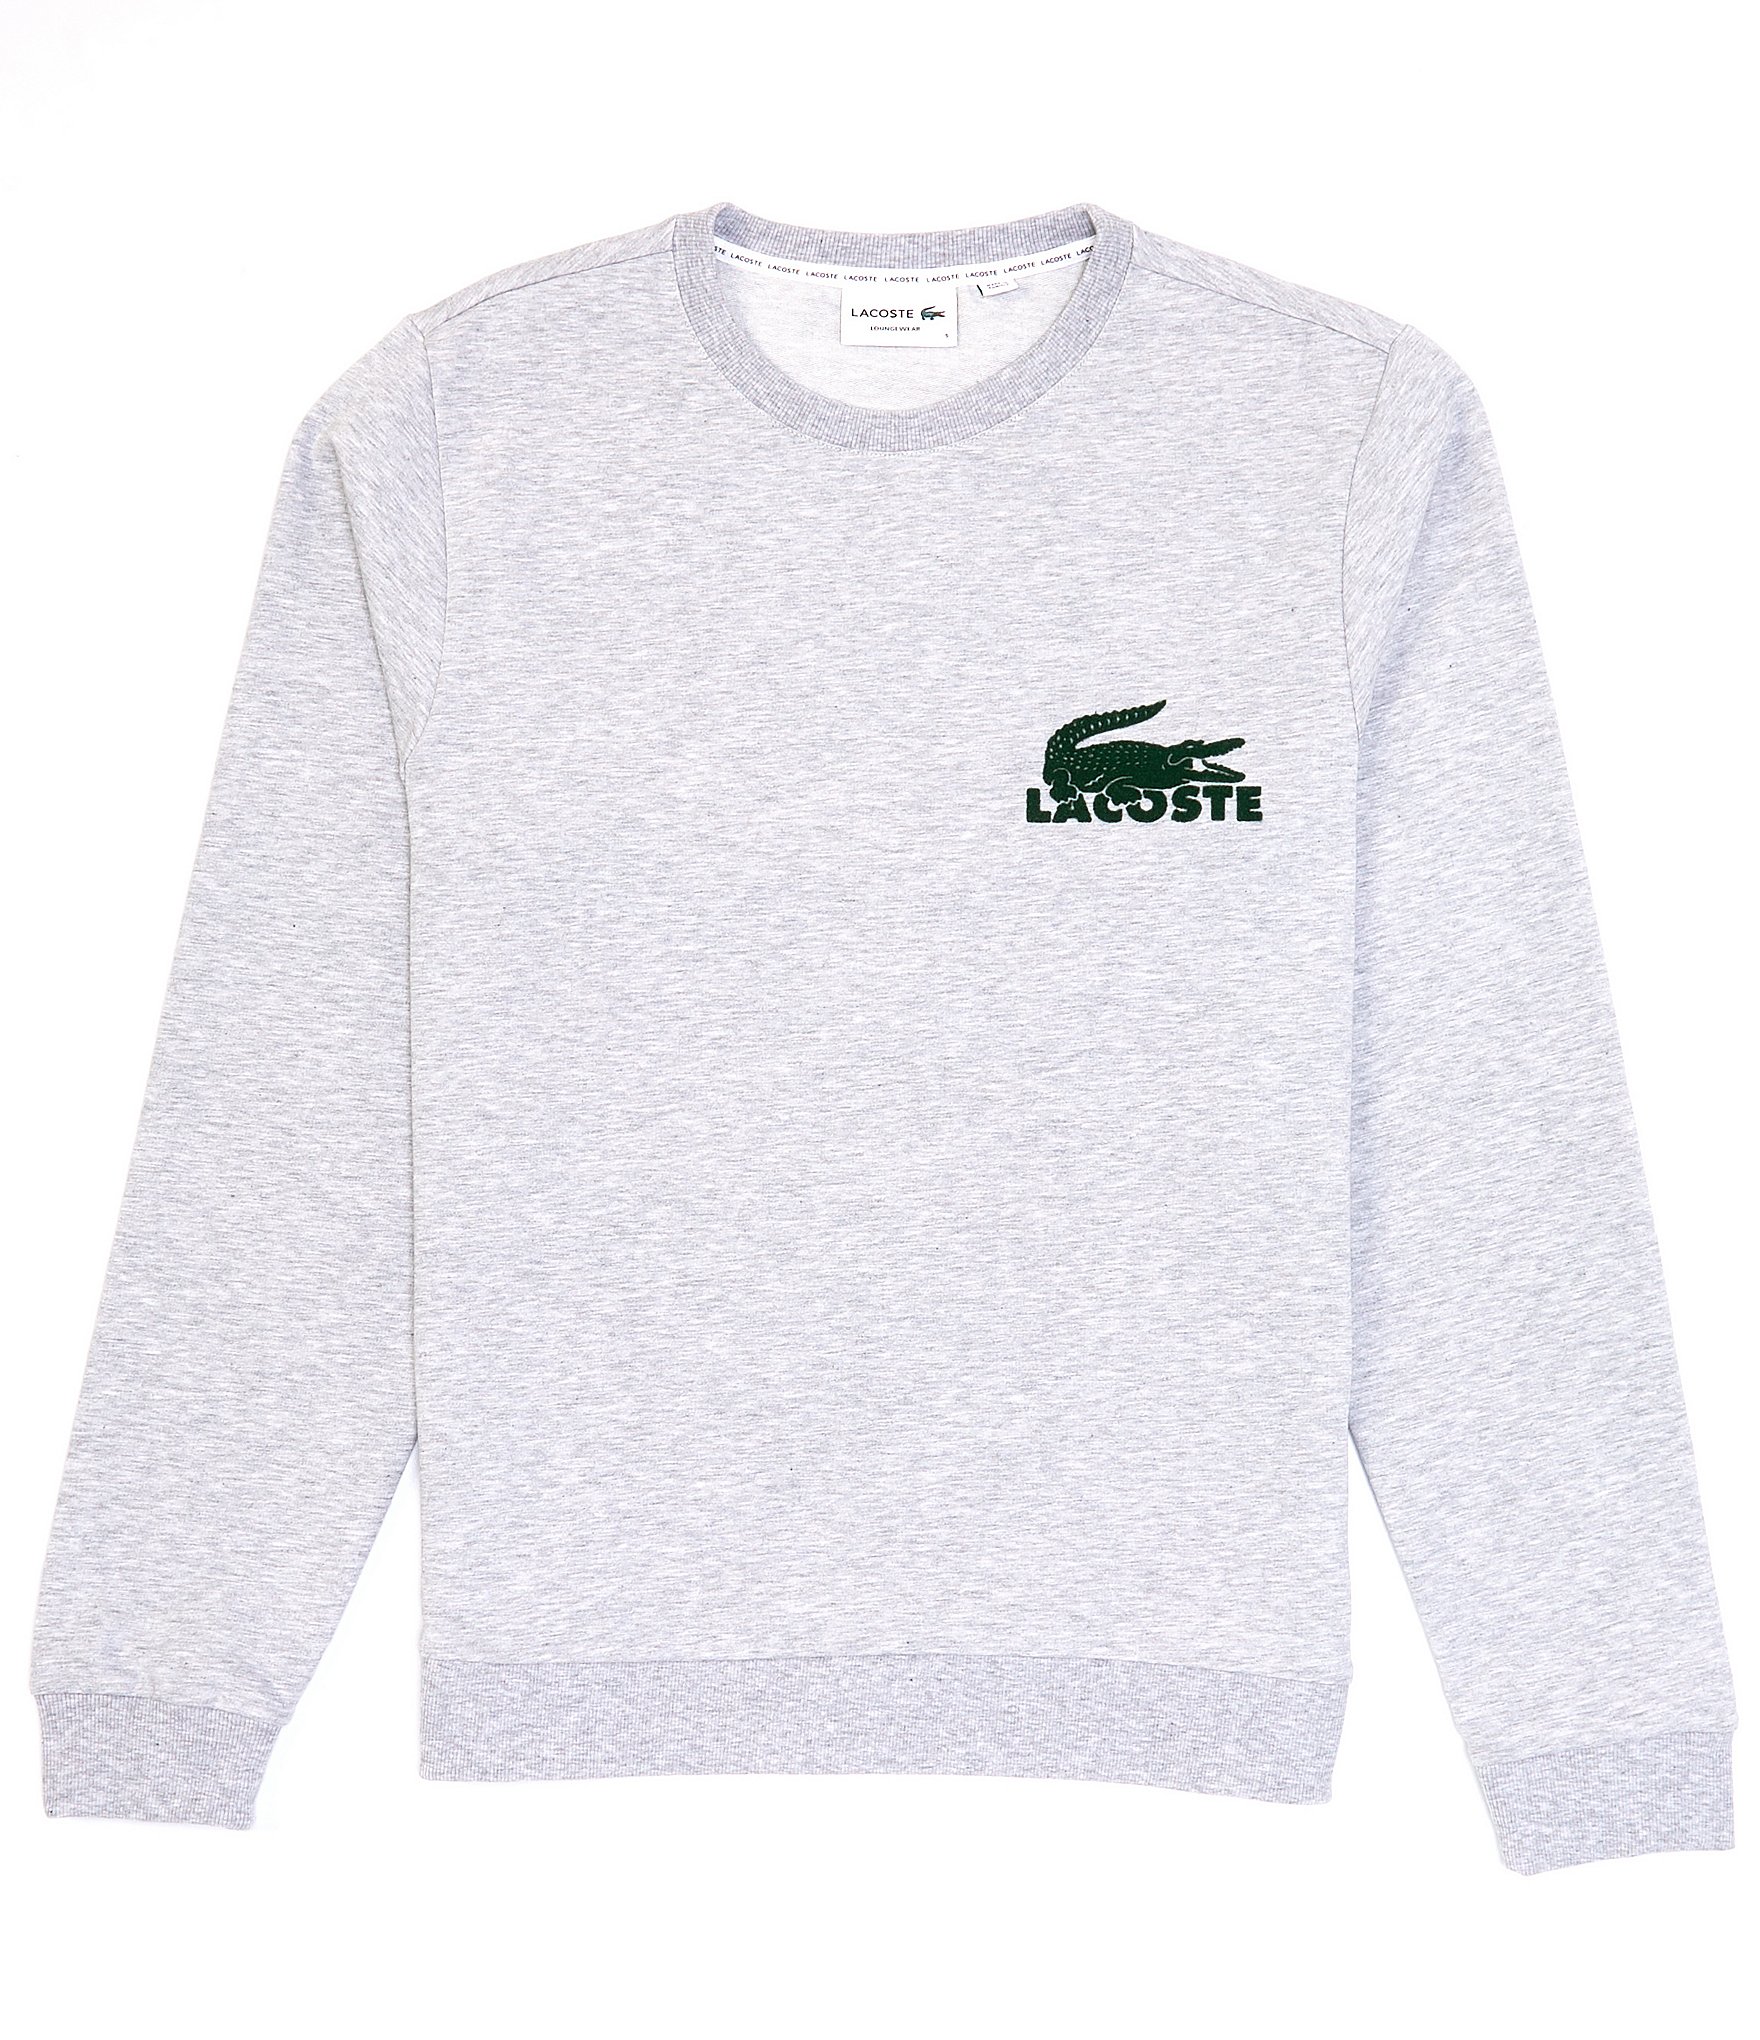 Lacoste Long-Sleeve Croco Logo Lounge Sweatshirt |